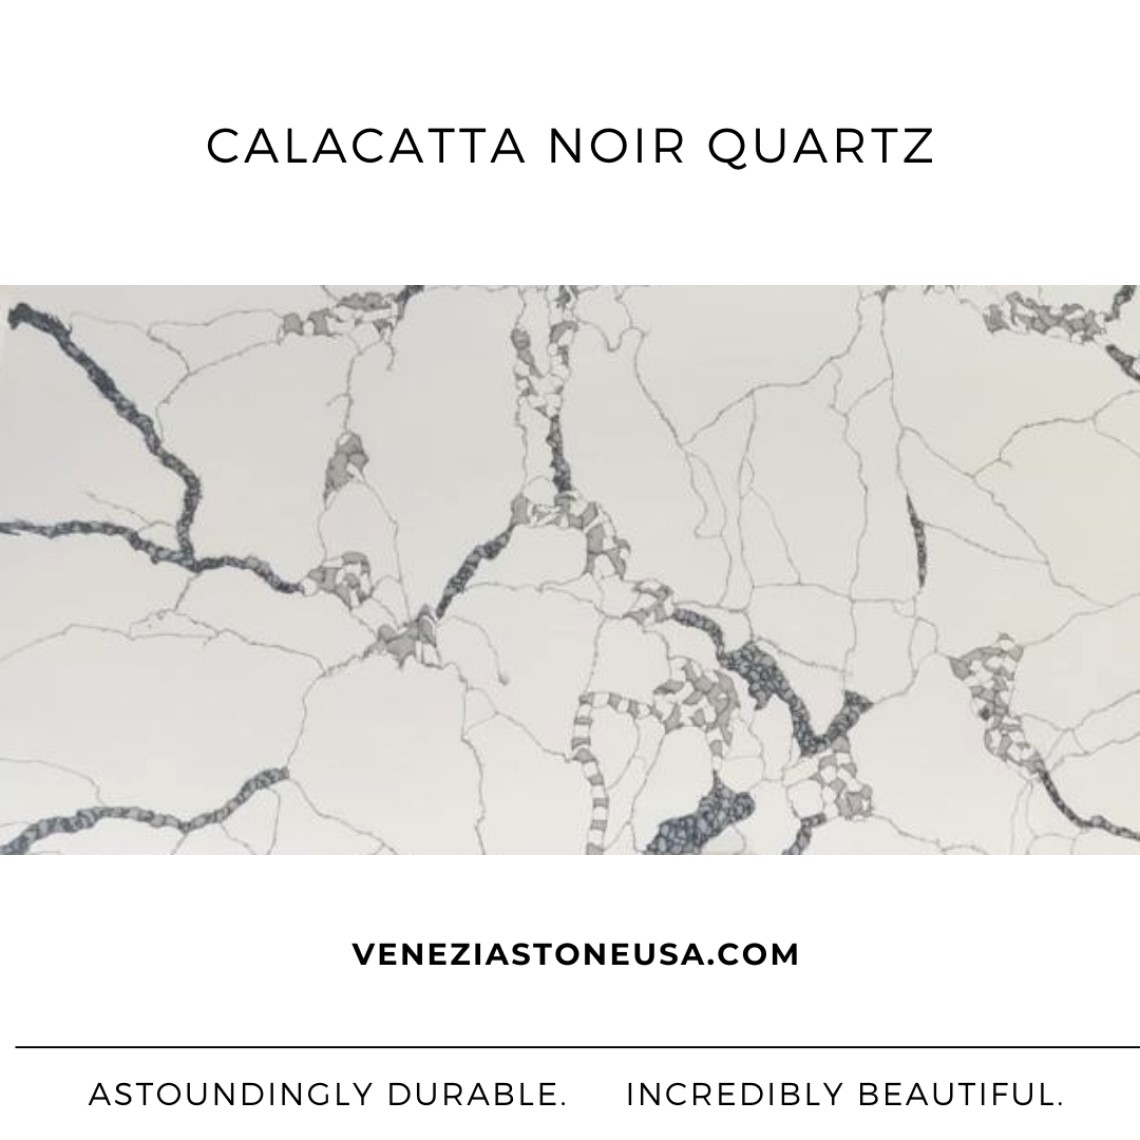 Calacatta Noir Quartz